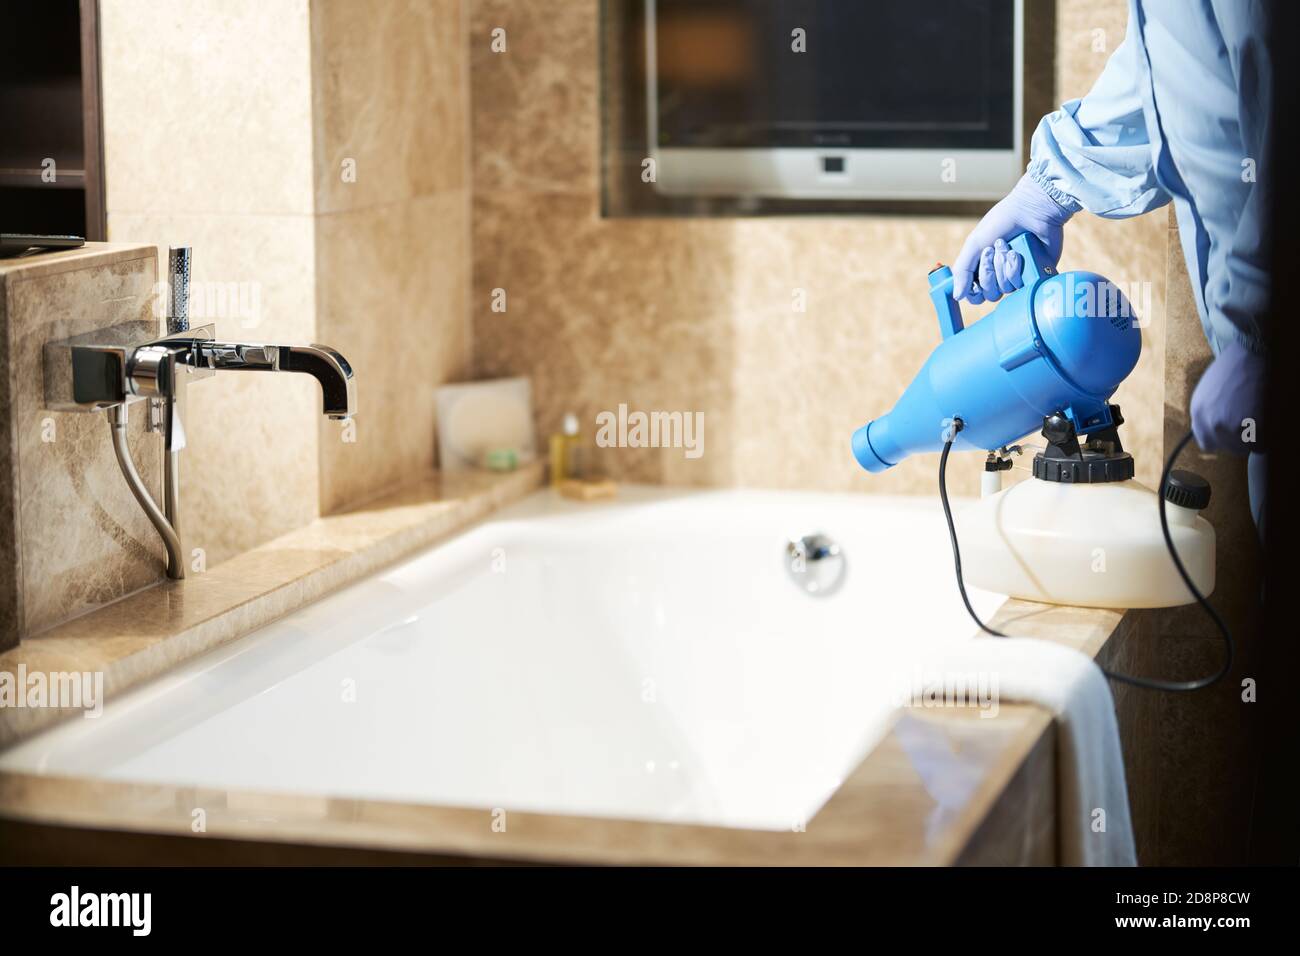 Photo de l'homme en culture utilisant un désinfectant pour prévenir le risque d'apparition de coronavirus dans la salle de bains. Coronavirus et concept de quarantaine Banque D'Images